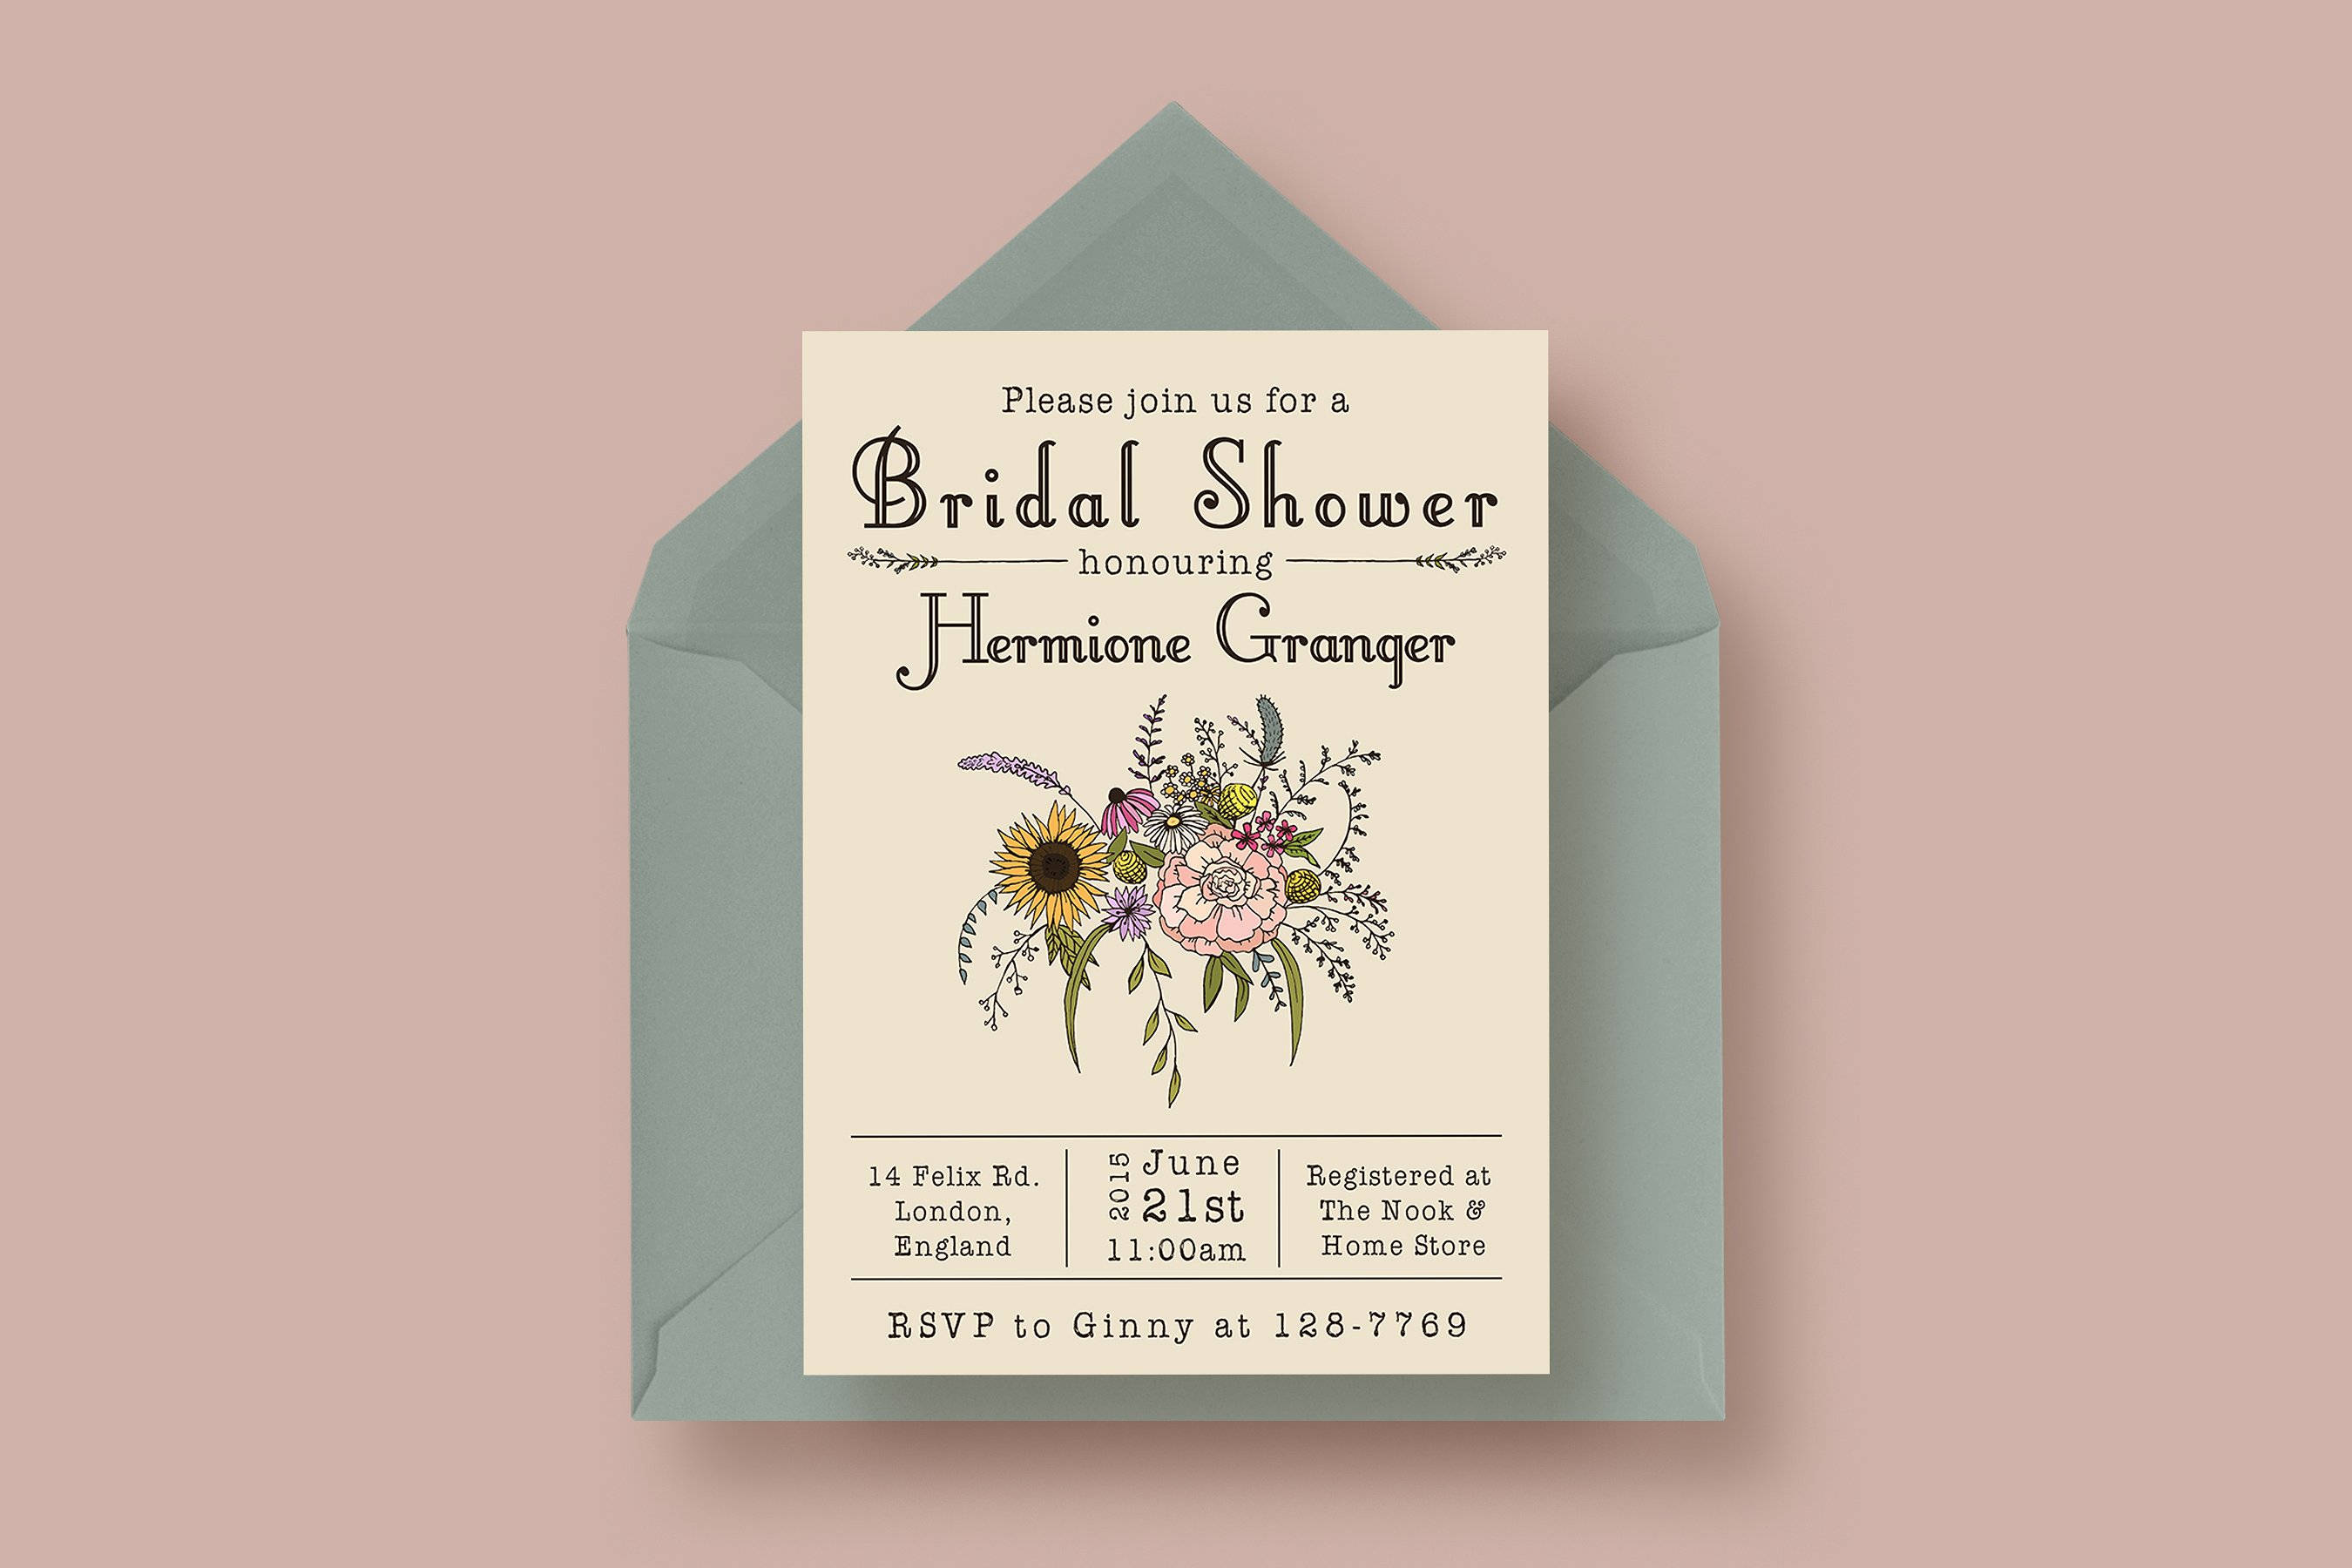 wildflower bridal shower invitation